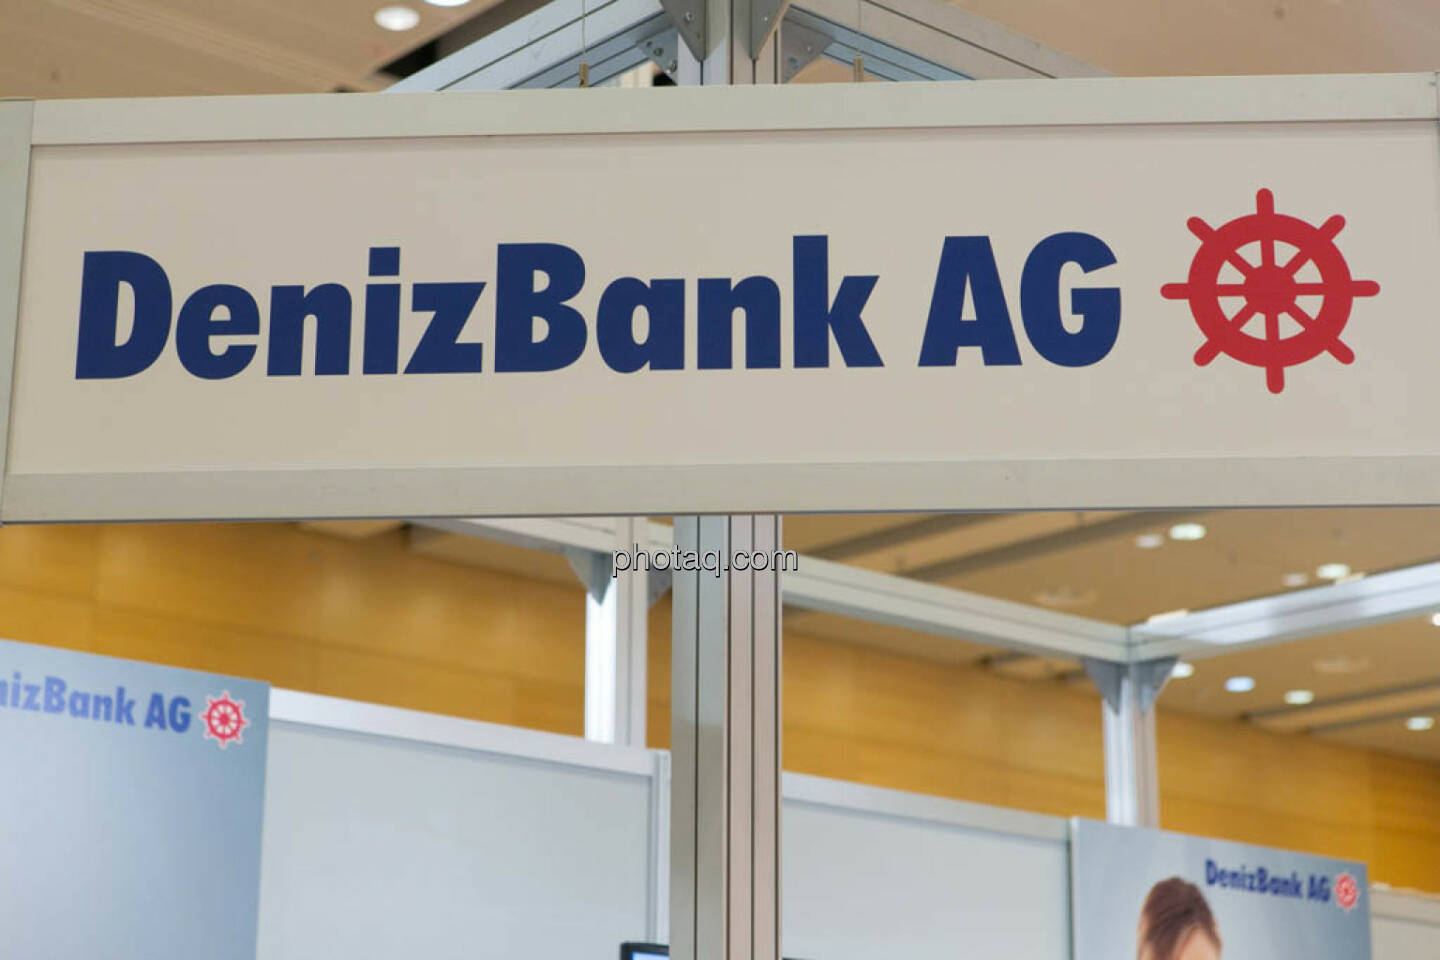 DenziBank AG